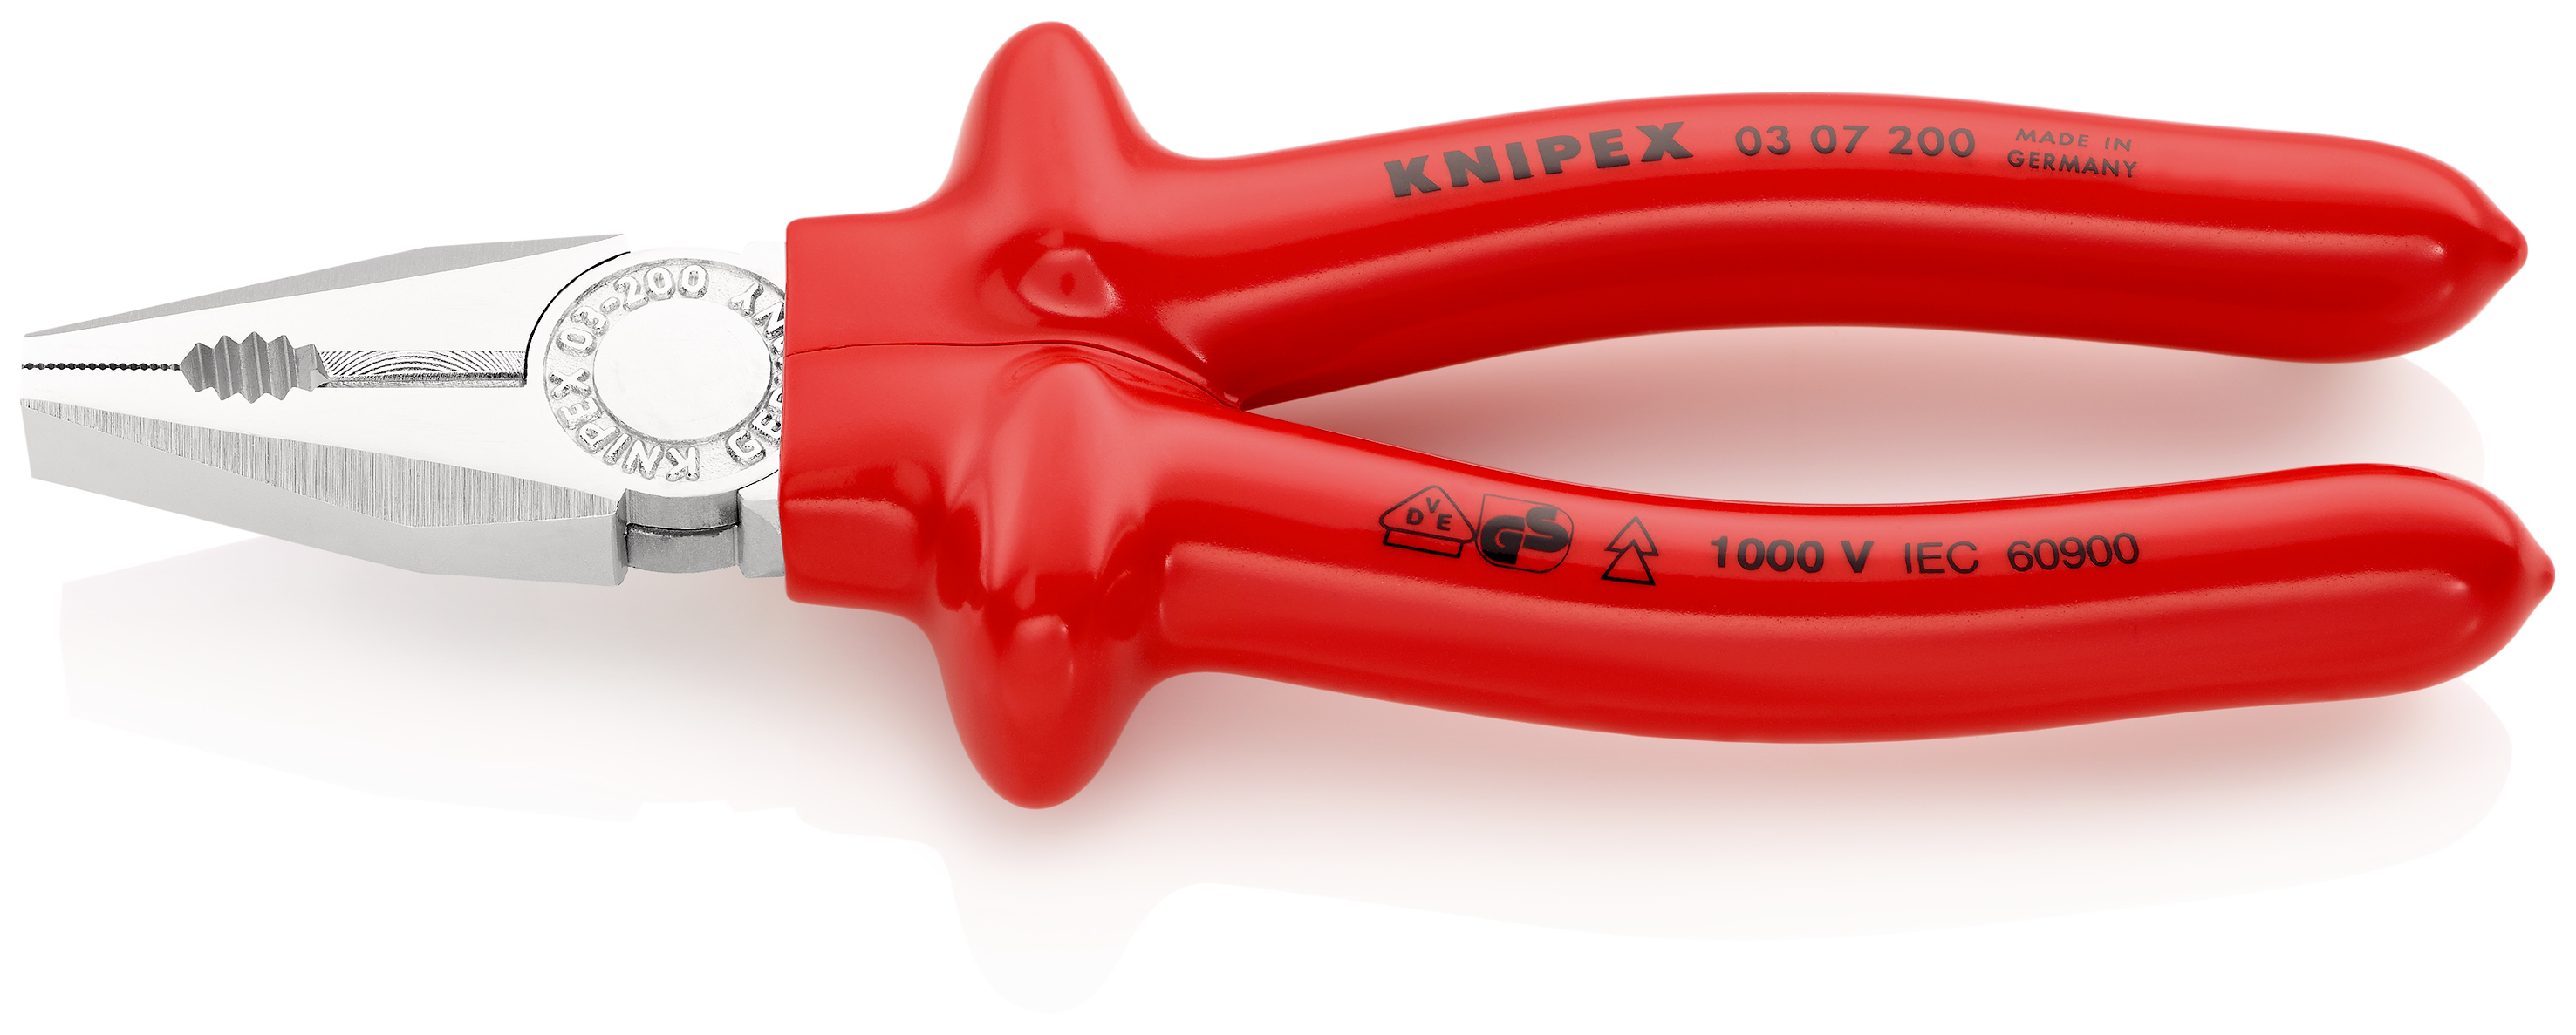 KNIPEX 03 01 250 Pince universelle noire atramentisée gainées en plastique 250 mm 